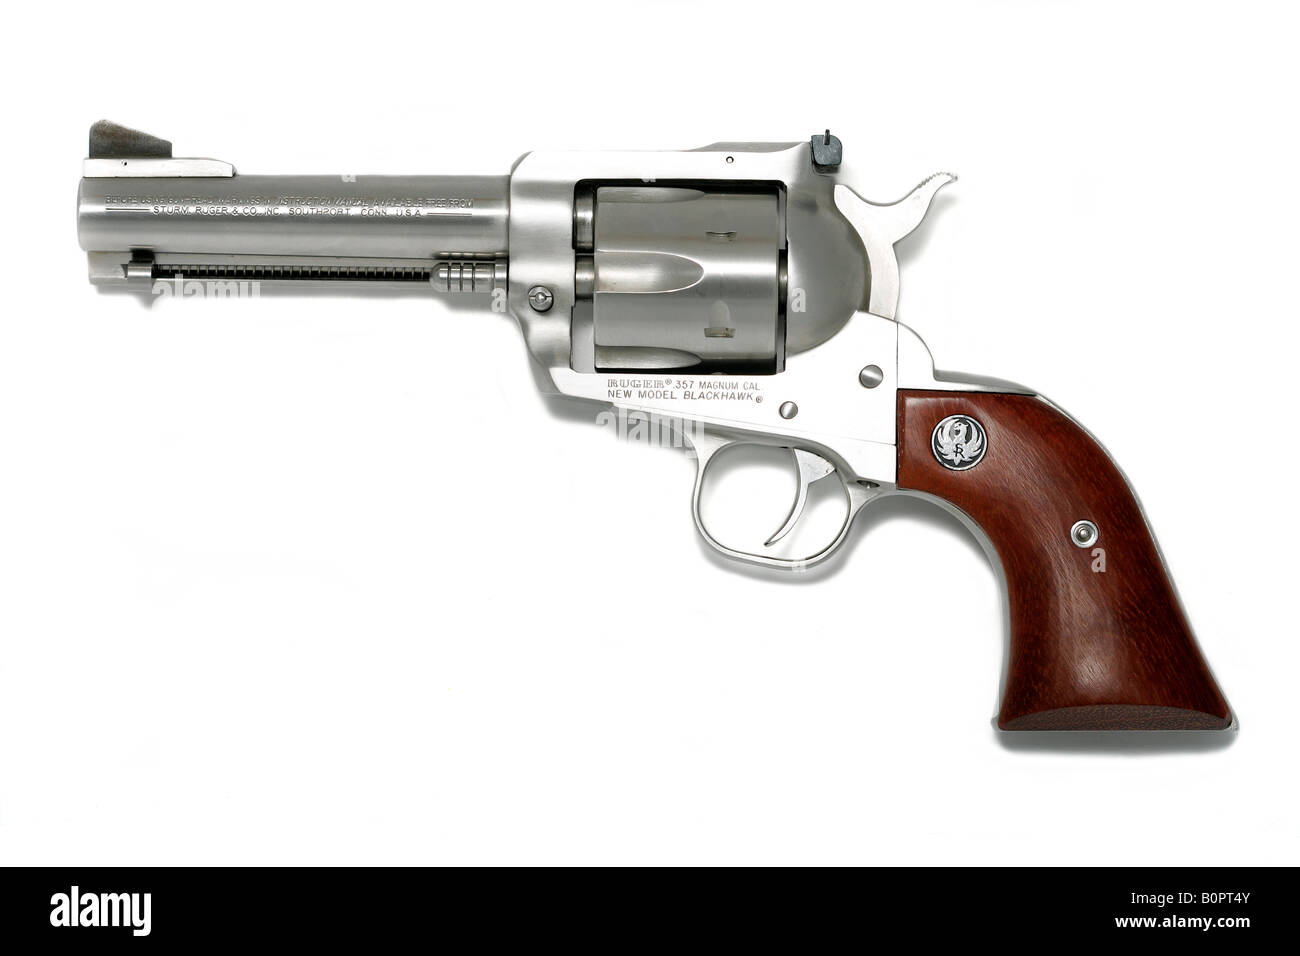 Magnum revolver 357 blackhawk ruger Ruger Blackhawk